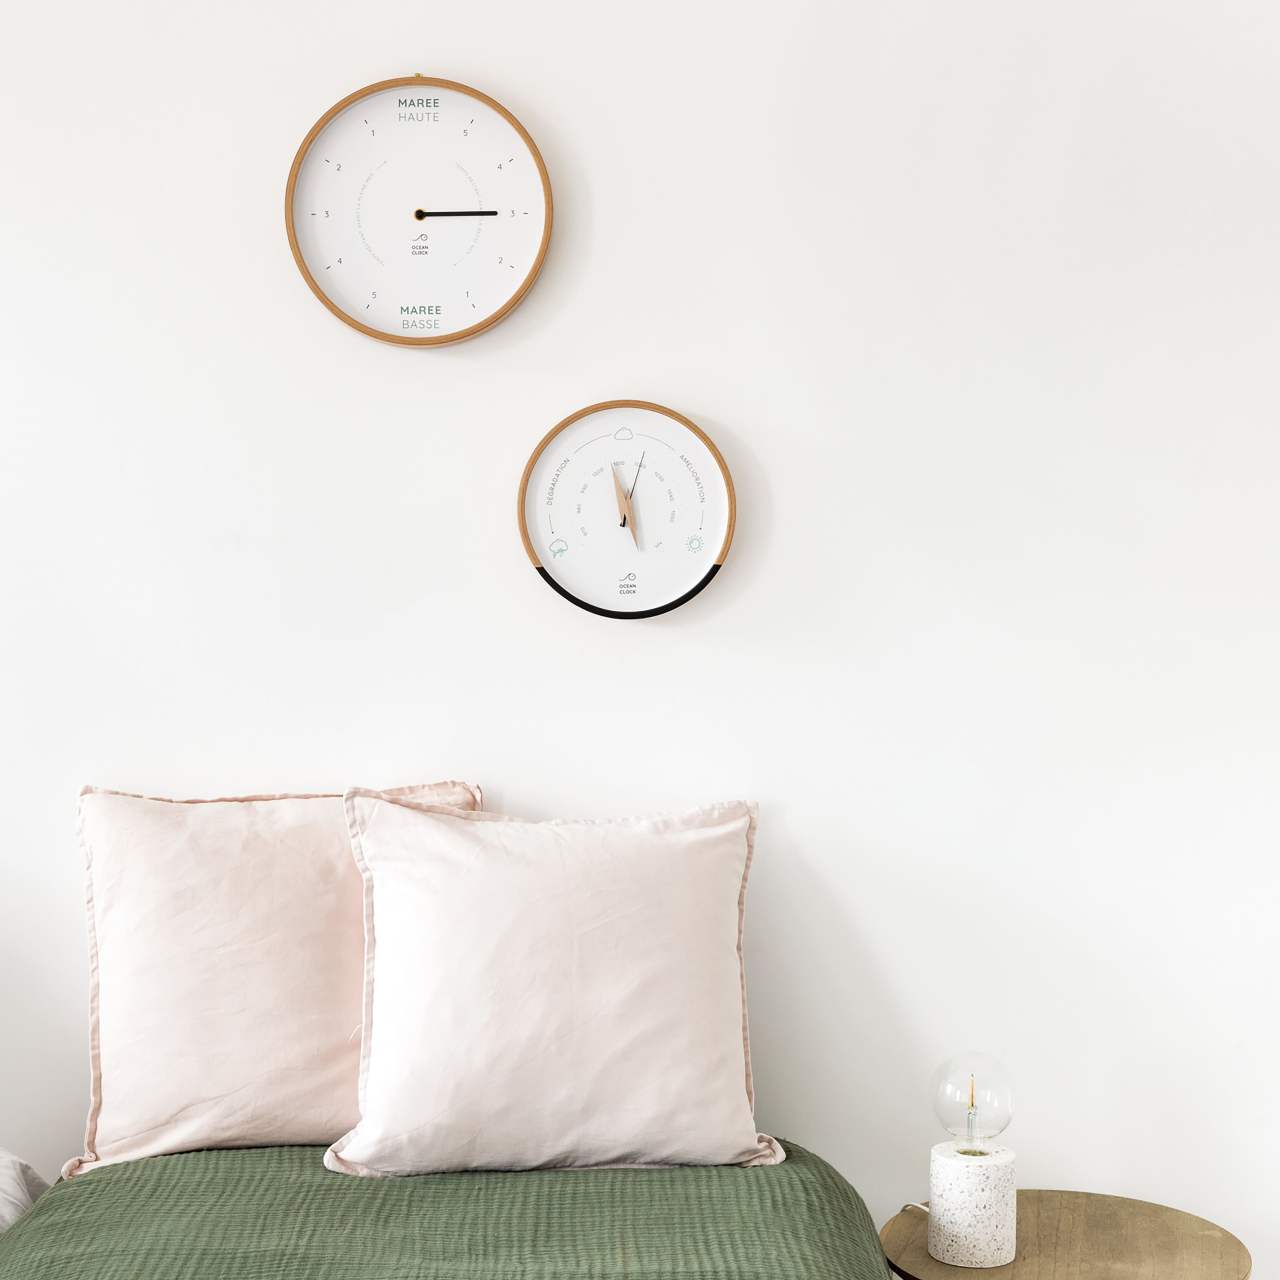 Baromètre blanc et horloge des marées blanc dans une chambre